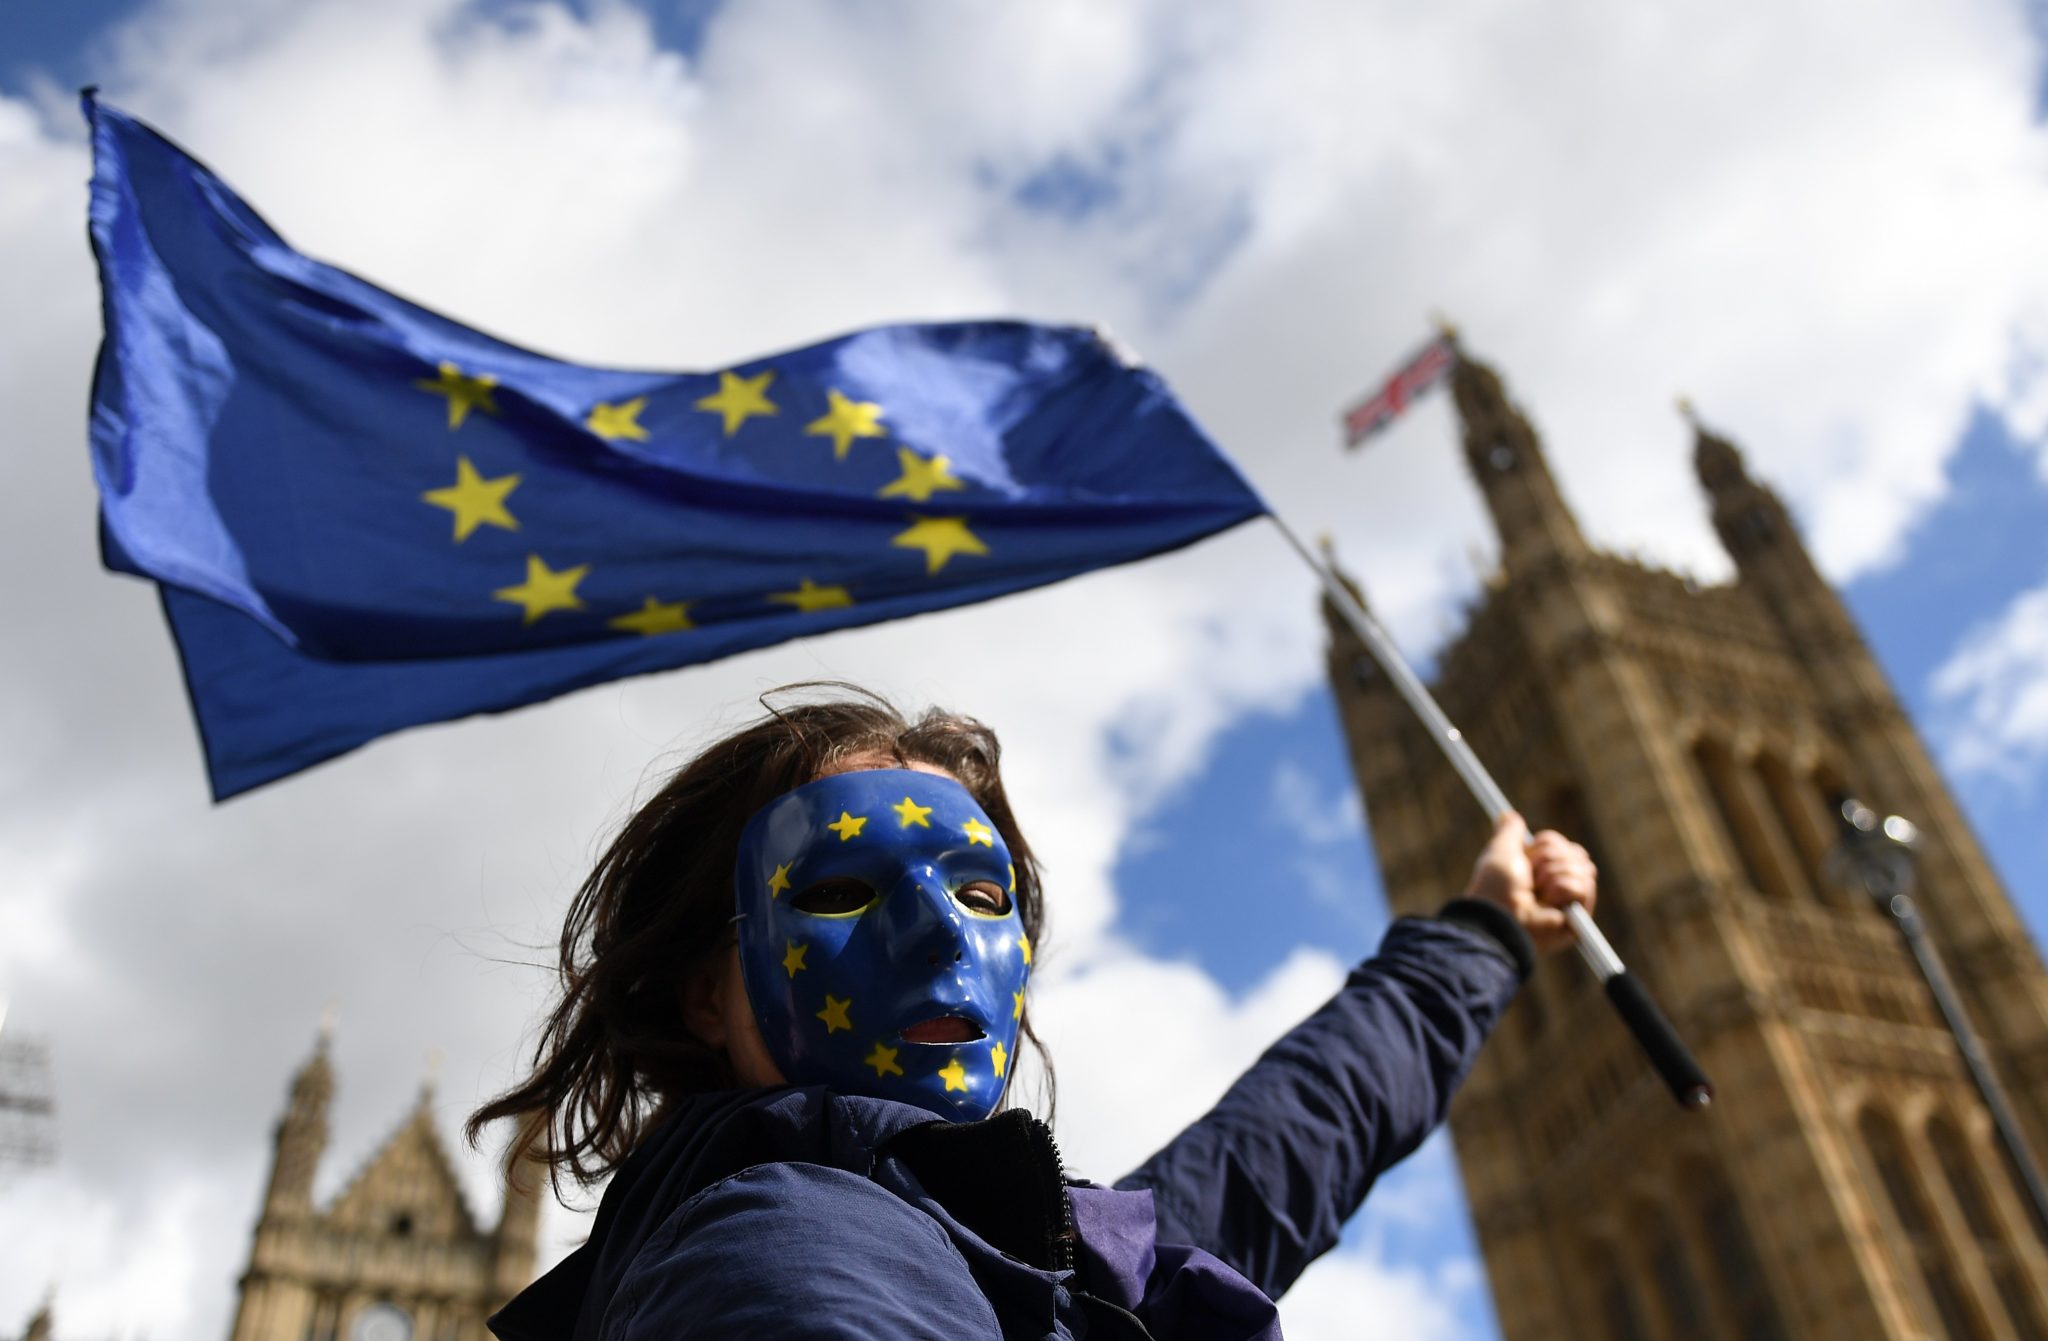 Protest przeciwko Brexitowi (przed parlamentem Wielkiej Brytanii), Parlament przygotowuje projekt ustawy o wyjściu Wlk. Brytanii z UE, która przeniesie zapisy unijnego prawa do prawa brytyjskiego, zapewniając ciągłość prawa, fot: Andy Rain, PAP/EPA